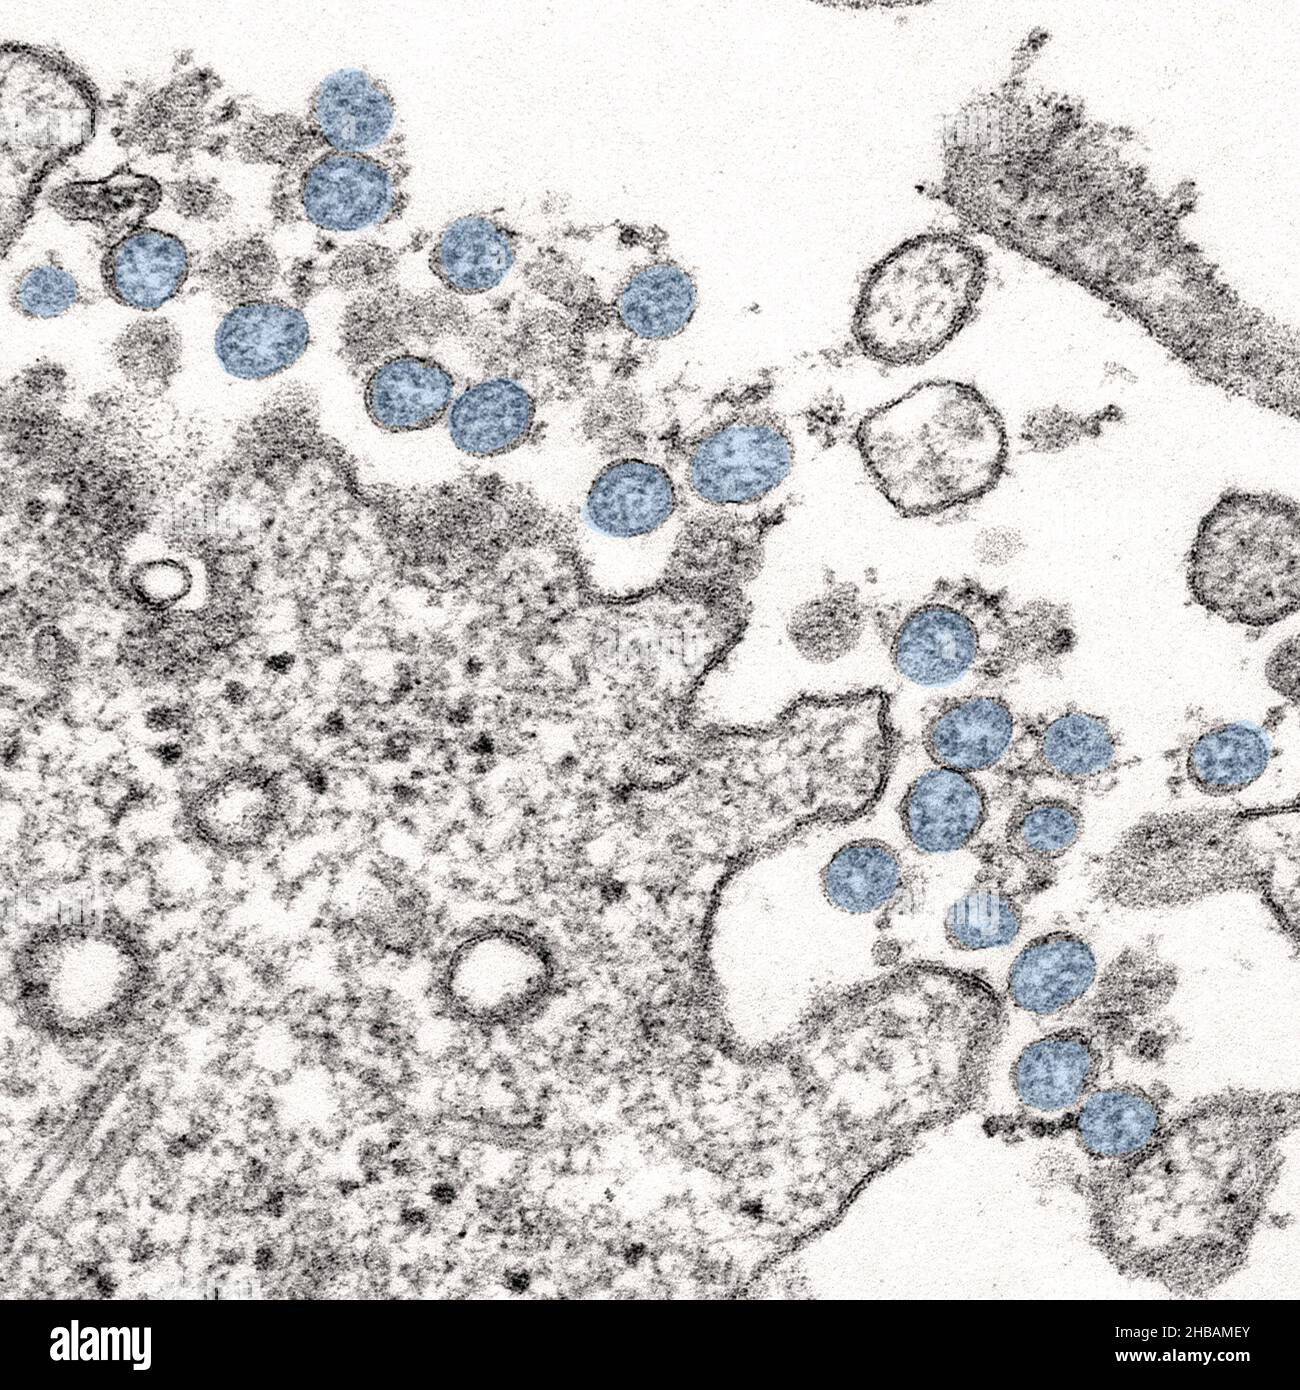 Transmissionselektronenmikroskopisches Bild eines Isolats aus dem ersten US-Fall von COVID-19, früher bekannt als 2019-nCoV. Die kugelförmigen viralen Partikel, blau gefärbt, enthalten Querschnitte durch das virale Genom, die als schwarze Punkte angesehen werden. Eine optimierte und verbesserte Version eines Bildes, das von den US Centers for Disease Control and Prevention produziert wurde / Credit: CDC / C.S. Goldschmied und A. Tamin Stockfoto